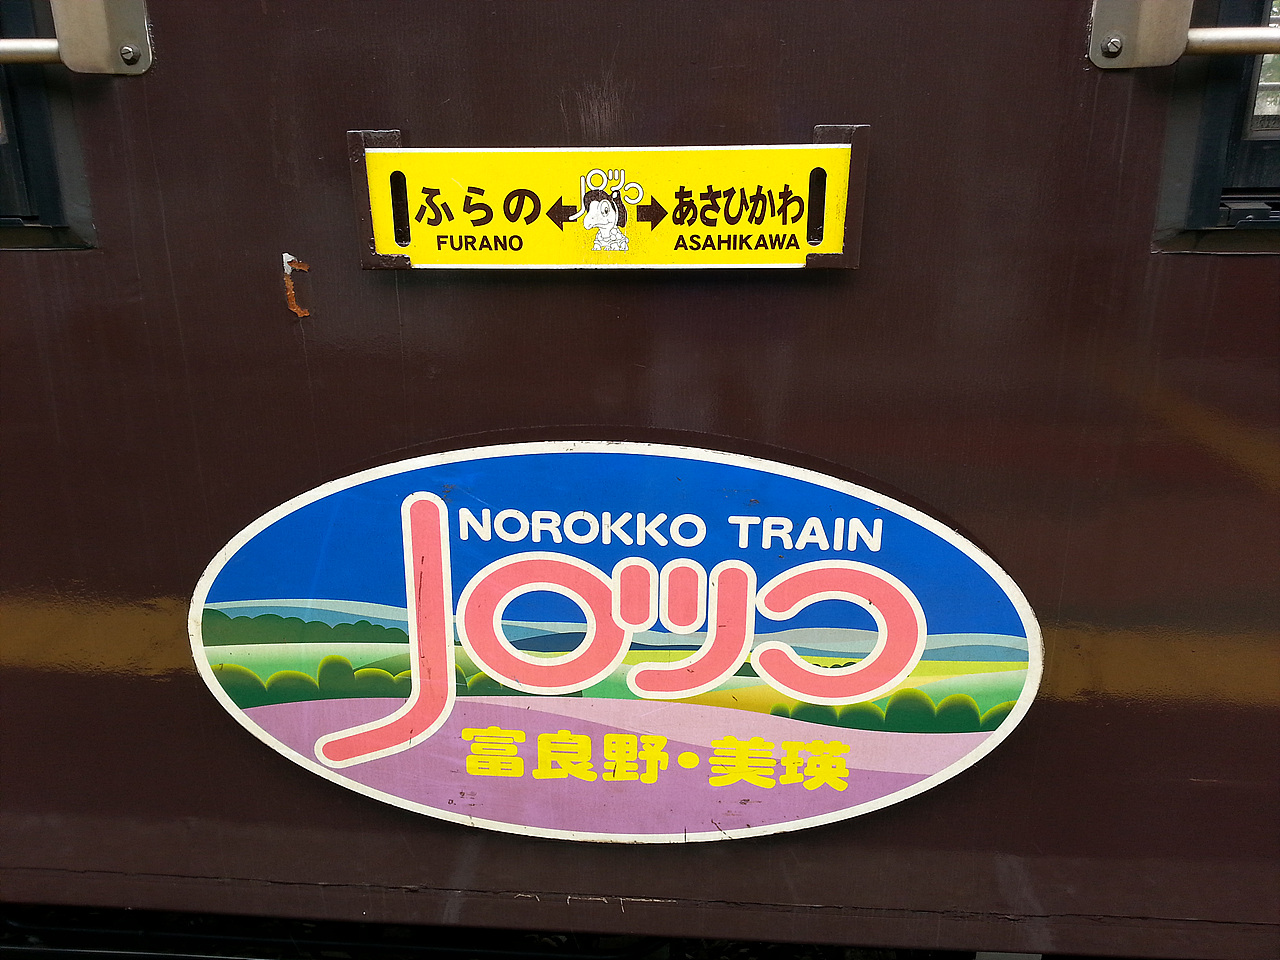  후라노비에이의 열차 외관의 표지판.